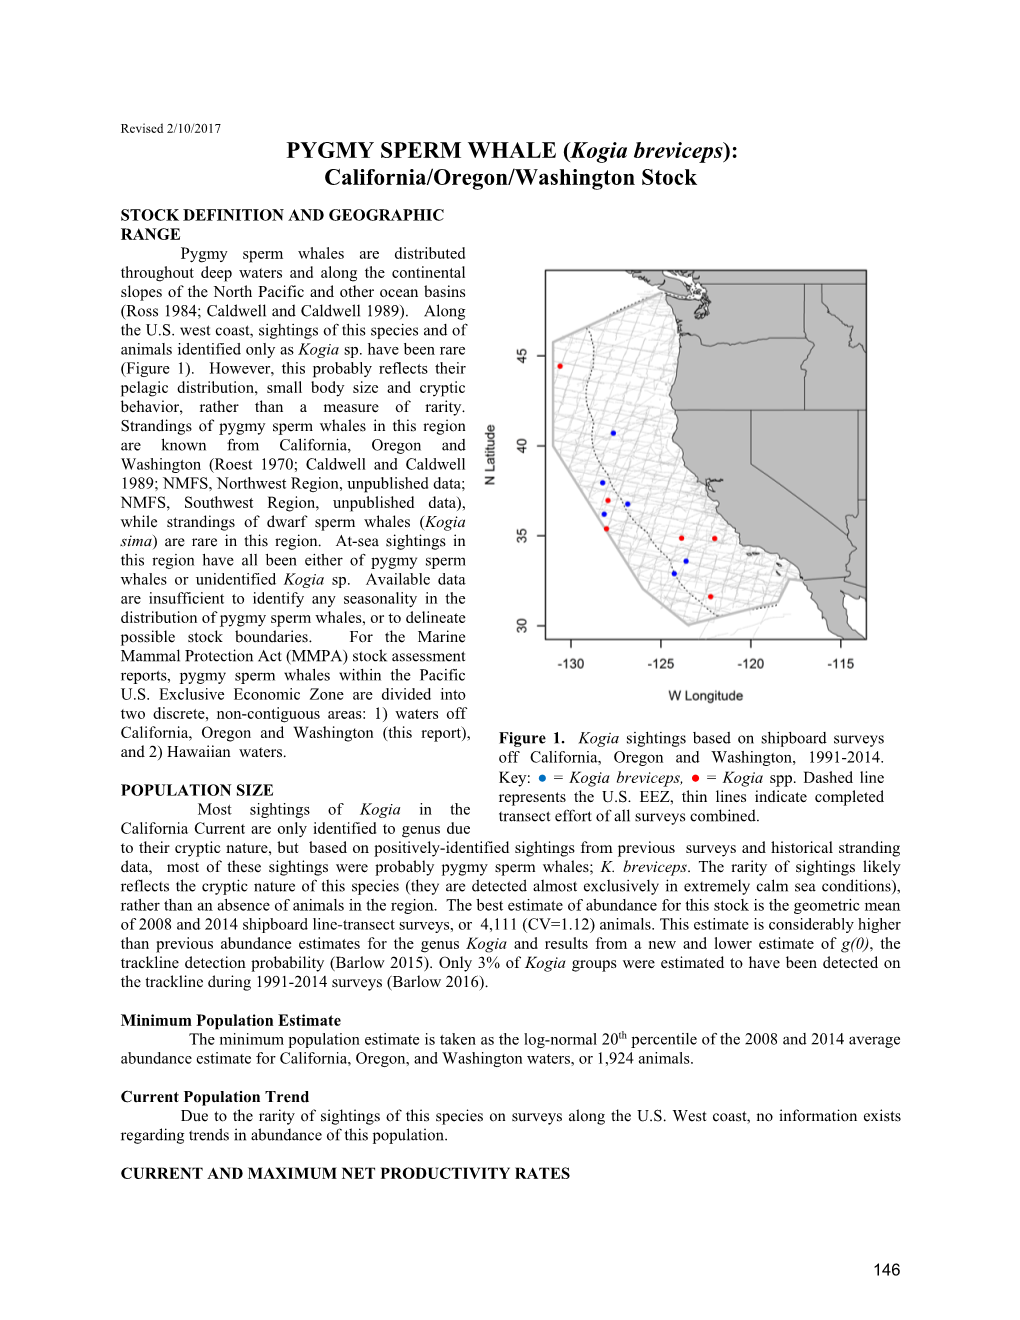 PYGMY SPERM WHALE (Kogia Breviceps): California/Oregon/Washington Stock